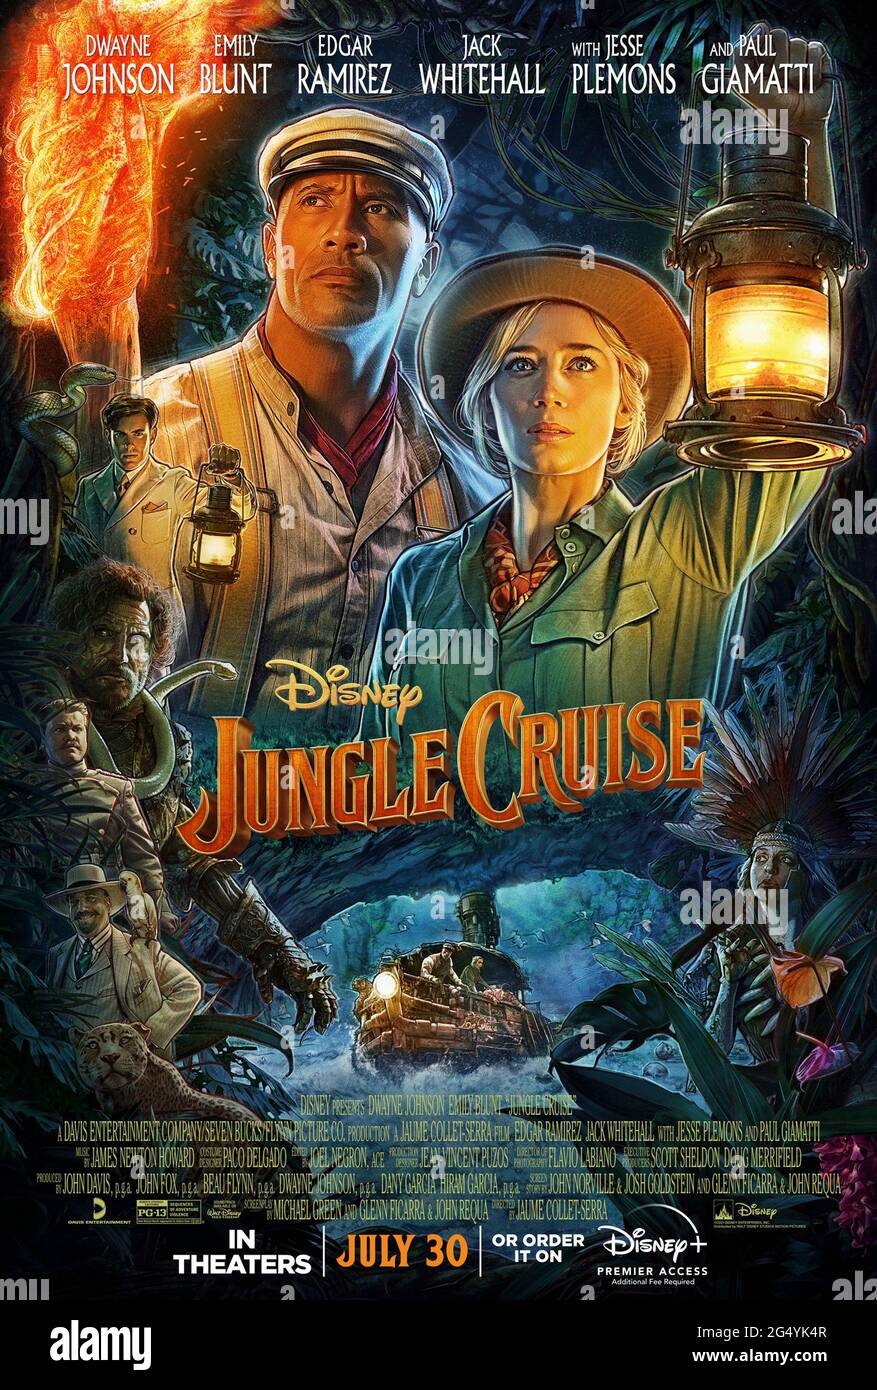 Dschungel Cruise (2020) unter der Regie von Jaume Collet-Serra und mit Dwayne Johnson, Emily Blunt, Jesse Plemons und Jack Whitehall in den Hauptrollen. Abenteuer mit großem Bildschirm, das auf Disneylands Freizeitpark-Fahrt basiert, über Passagiere auf einer unheilvollen Reise auf einem Flussboot. Stockfoto